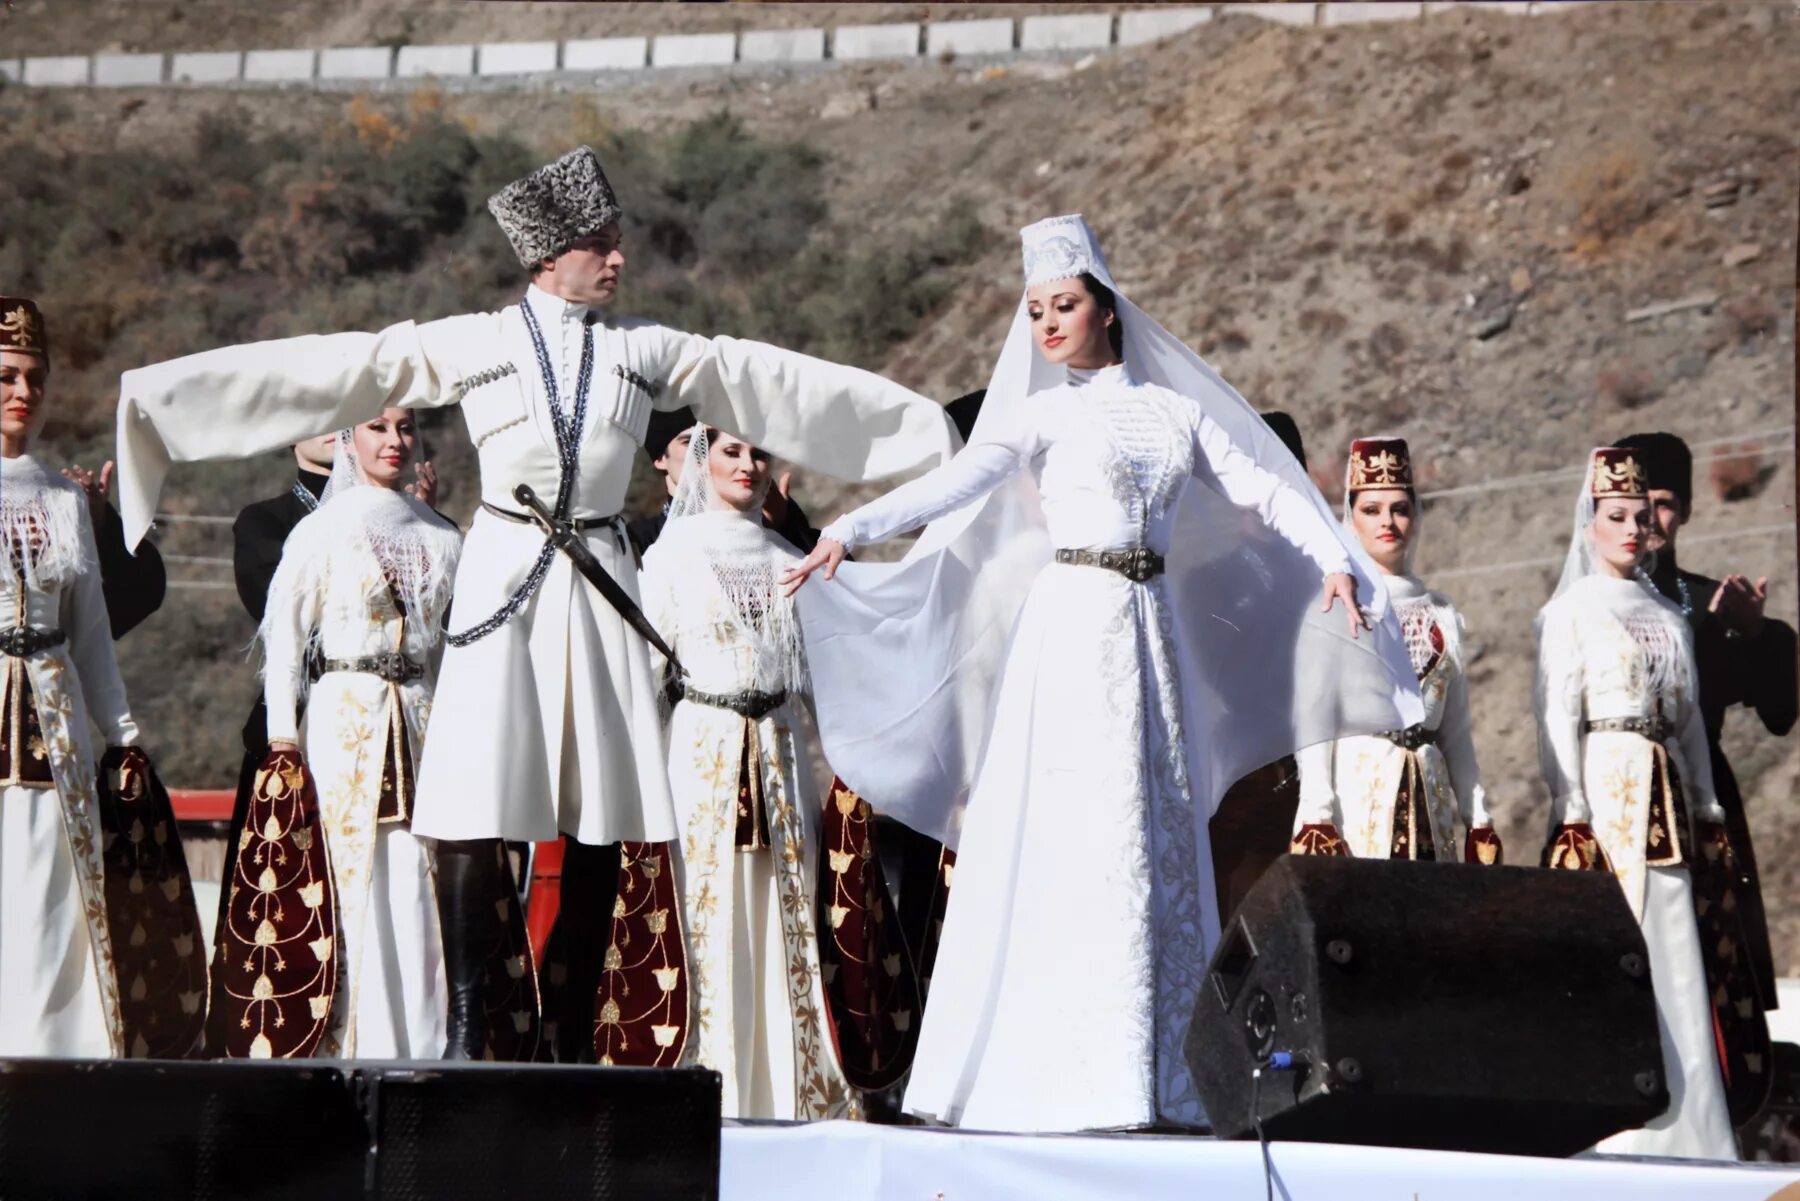 Северной Осетии танец симд. Нескольких осетин